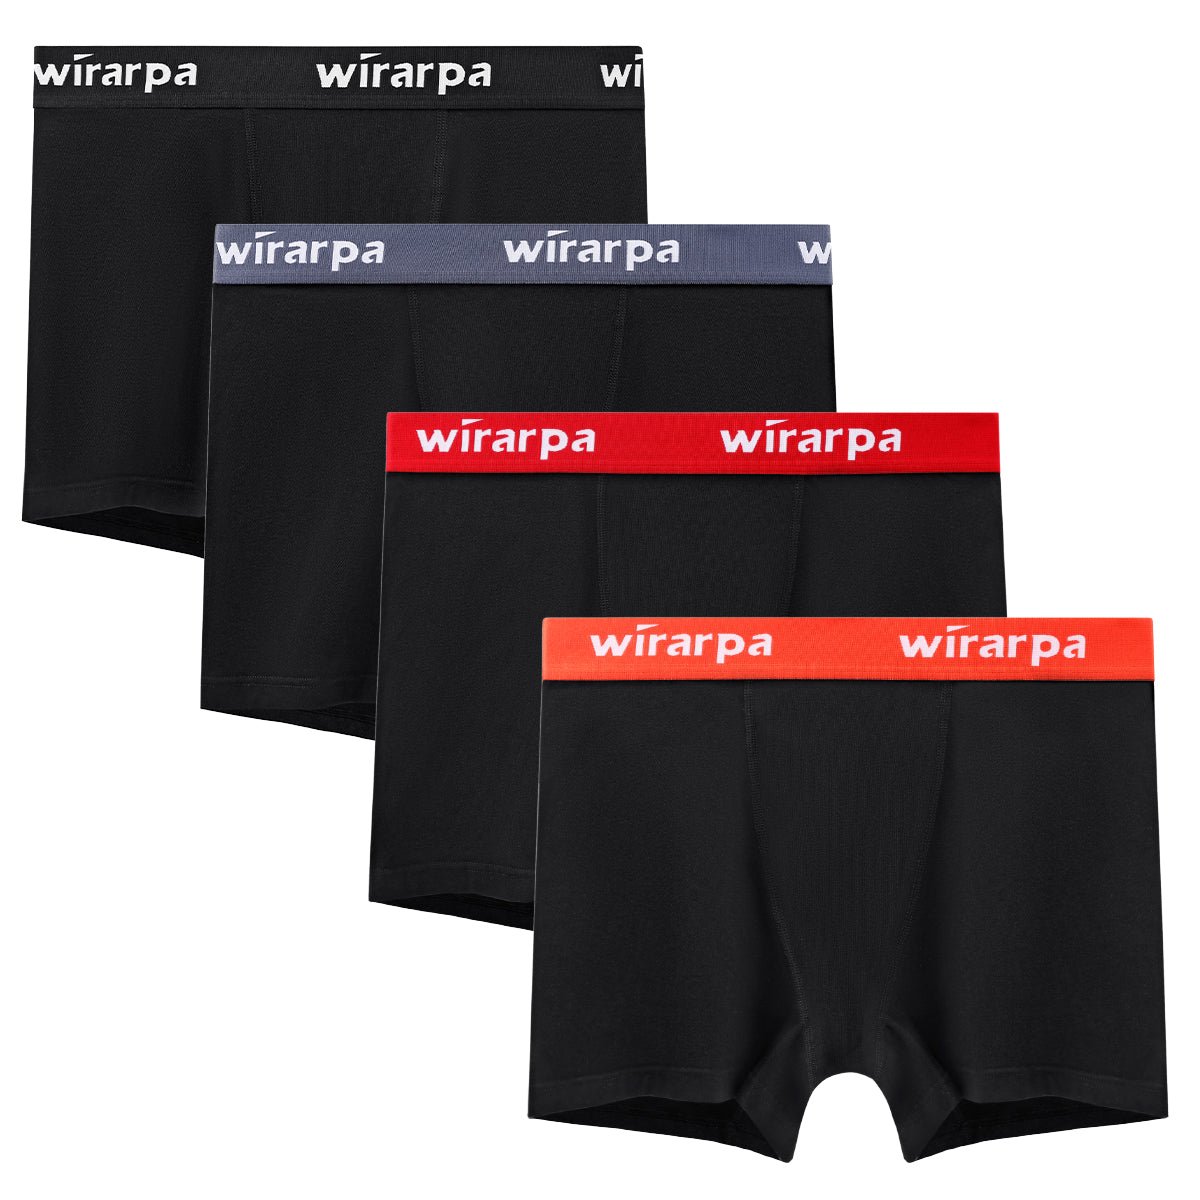 wirarpa Women's Cotton Boy Shorts Underwear Anti Chafing Soft